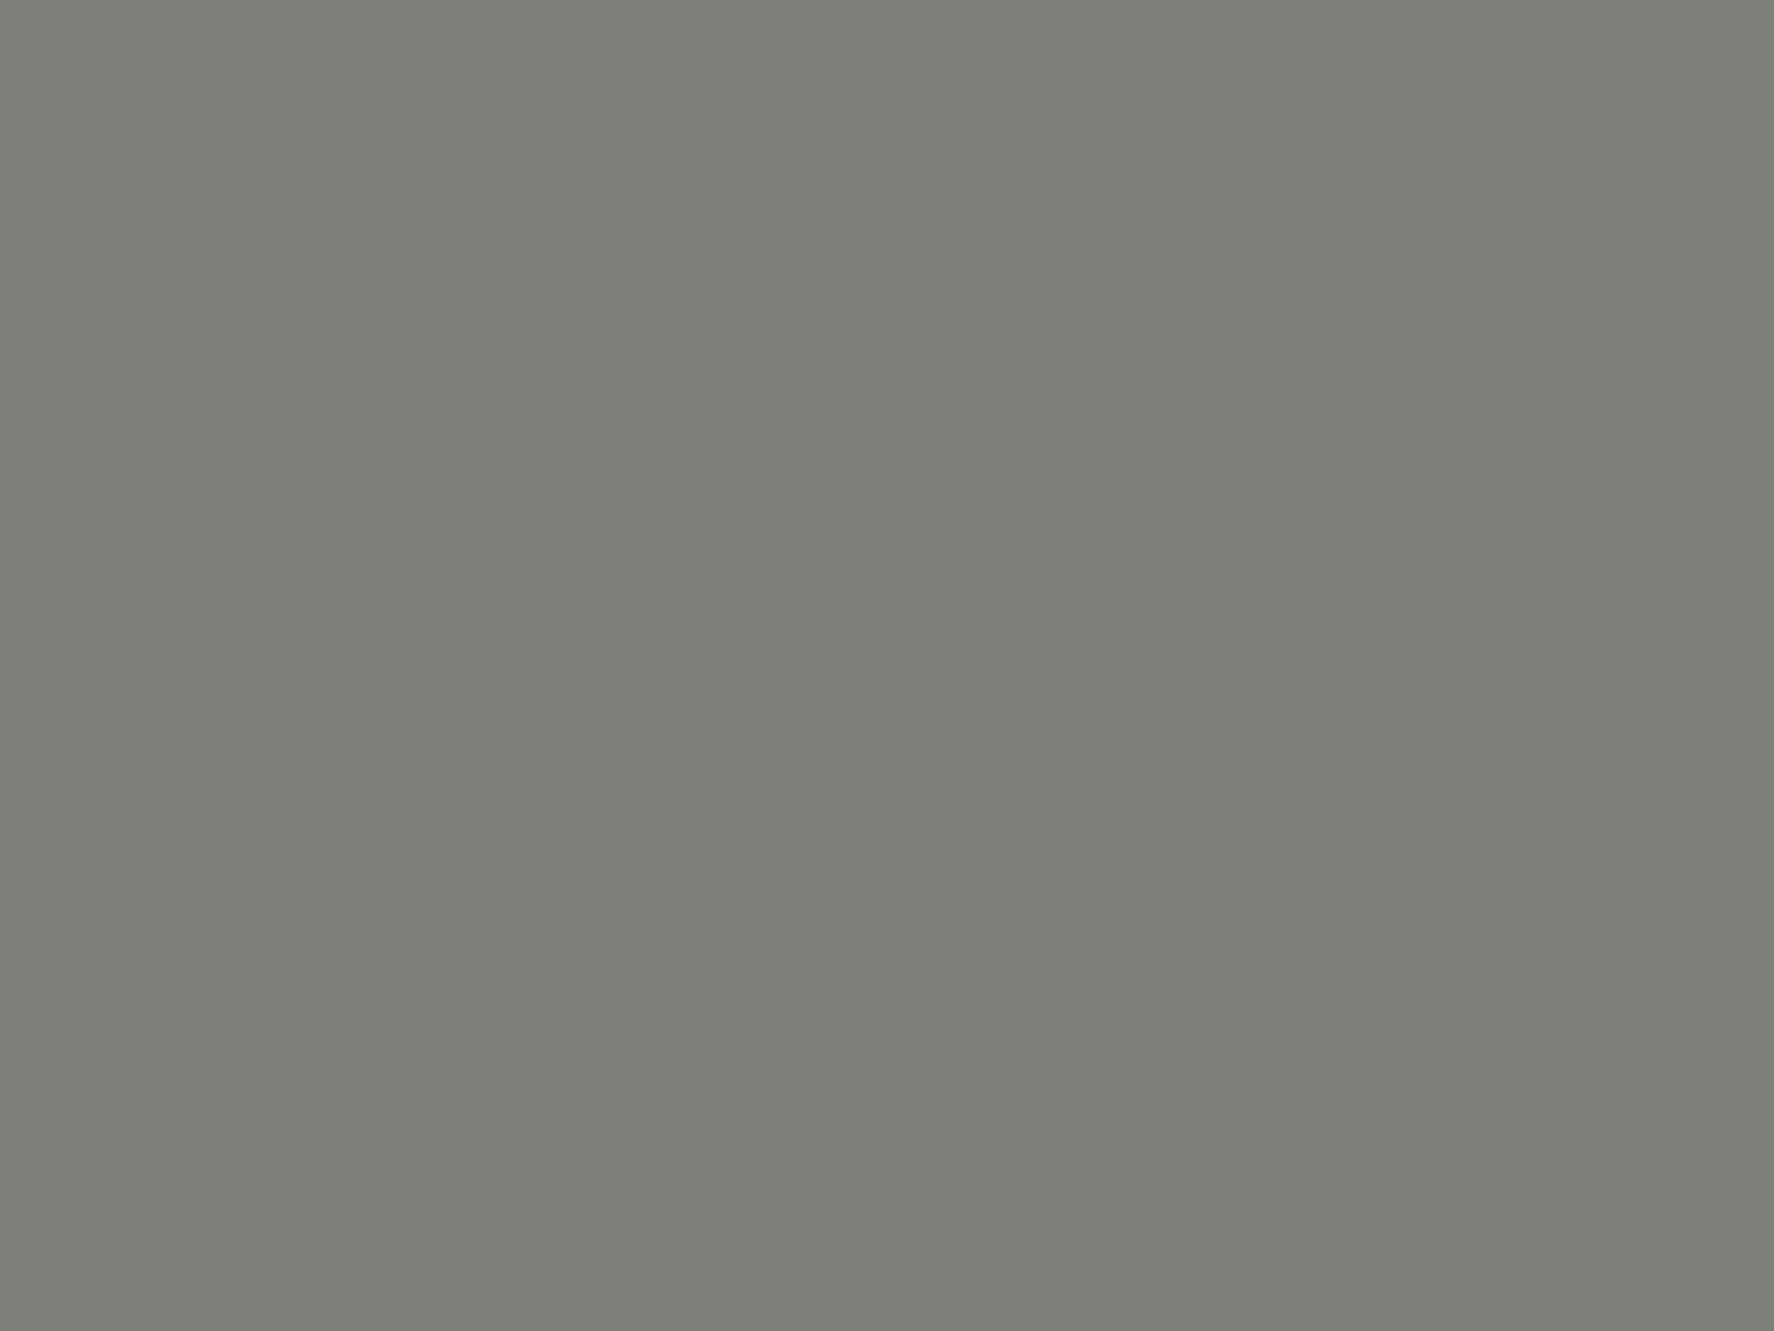 Музей деревянного зодчества в Коломенском — Проездная башня Николо-Корельского монастыря. Музей-заповедник «Коломенское», Москва